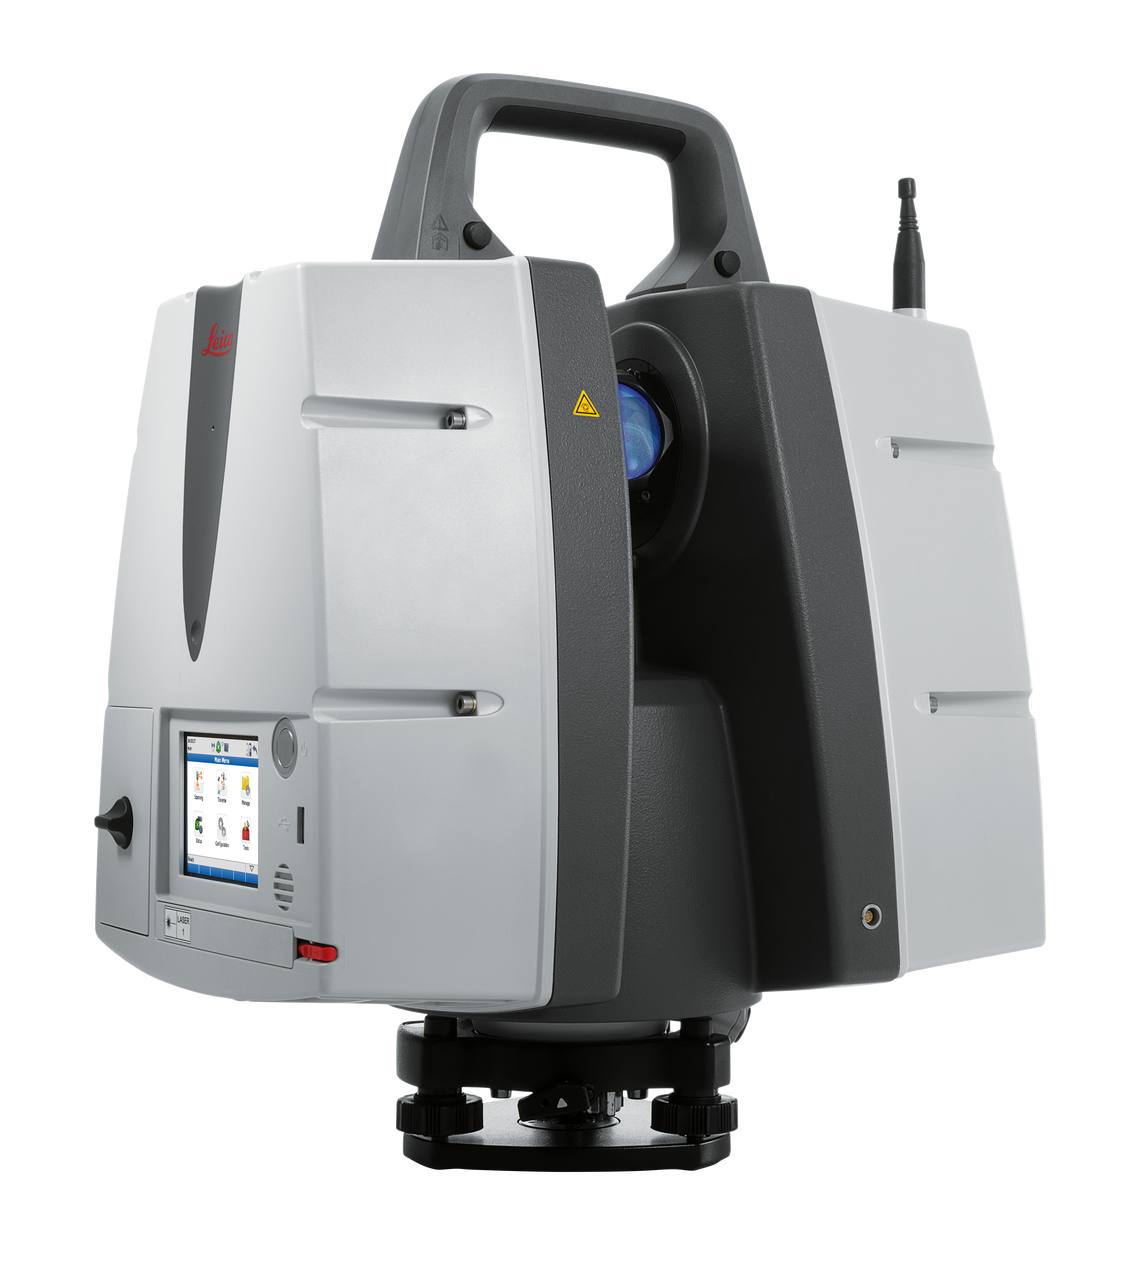 Leica ScanStation P50 Long Range 3D Terrestrial Laser Scanner